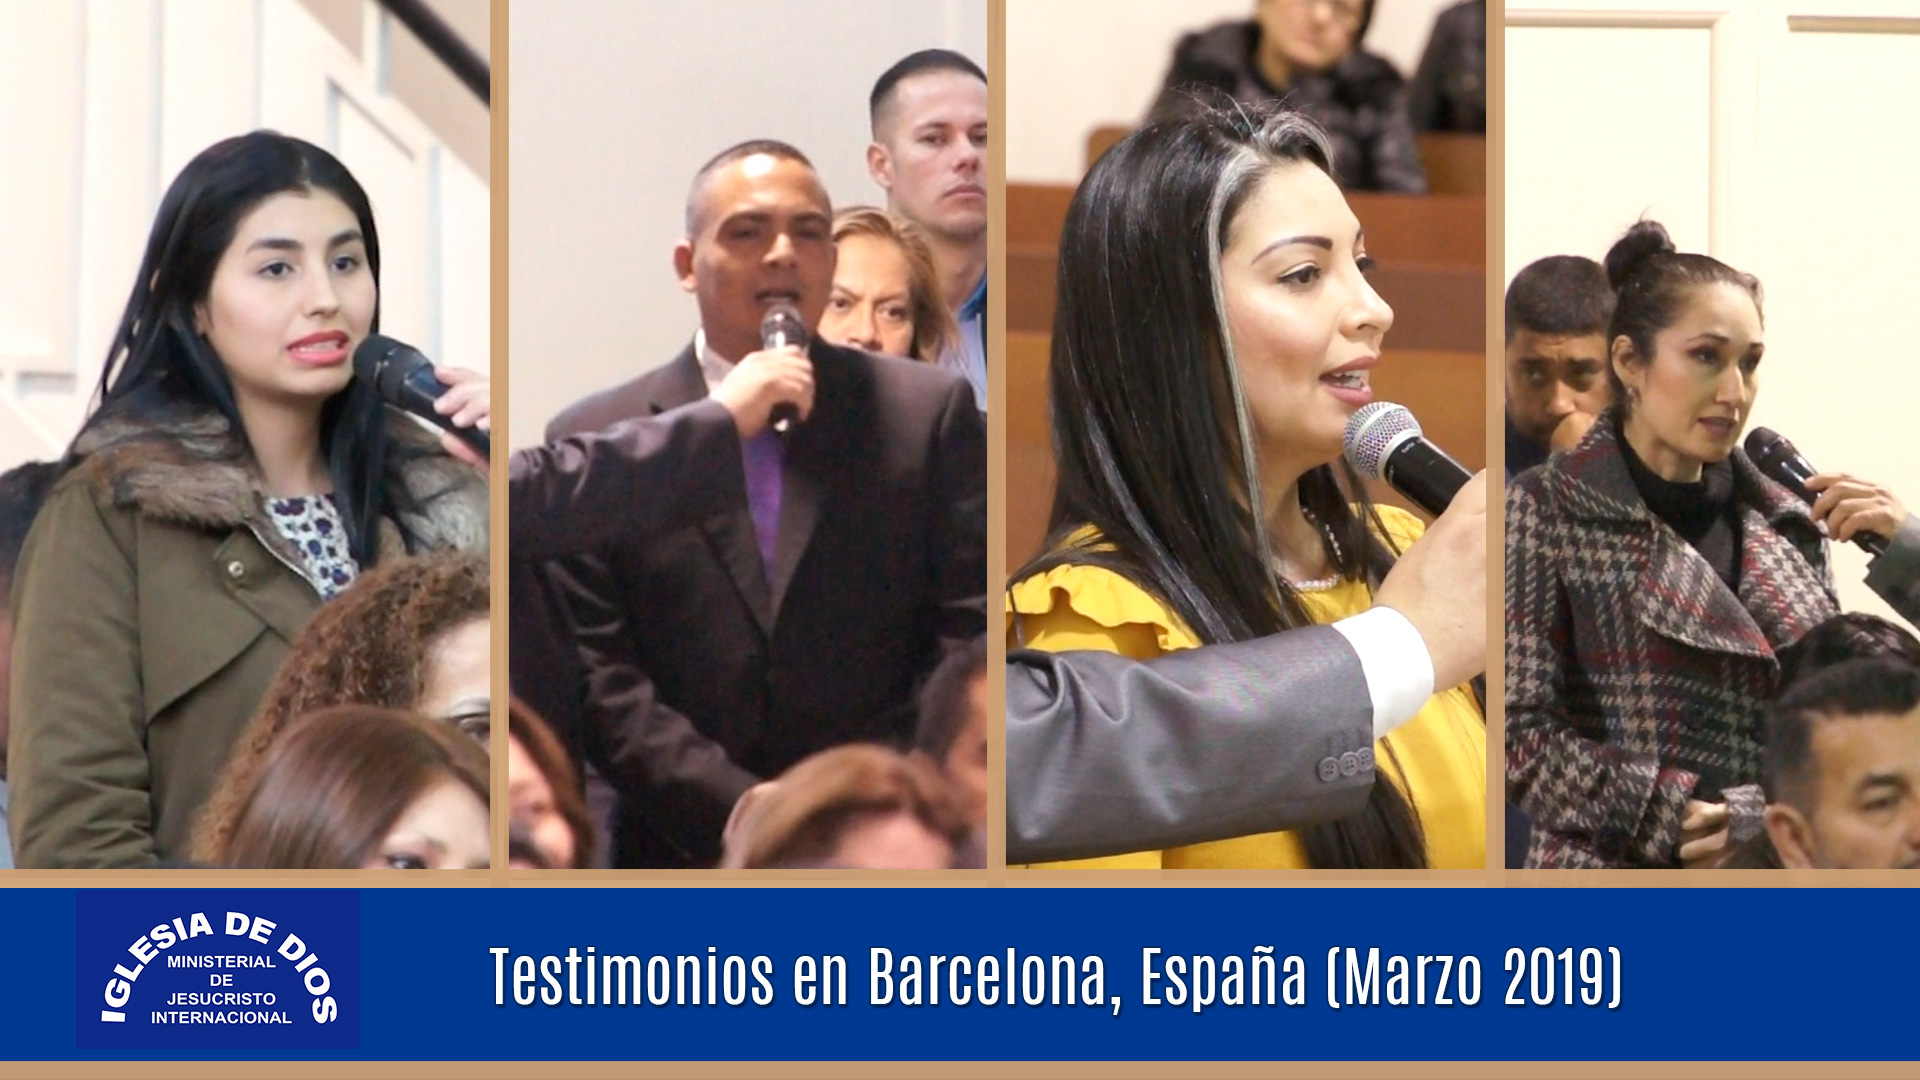 Testimonios en Barcelona, España (Marzo 2019) - Iglesia de Dios Ministerial  de Jesucristo Internacional - IDMJI